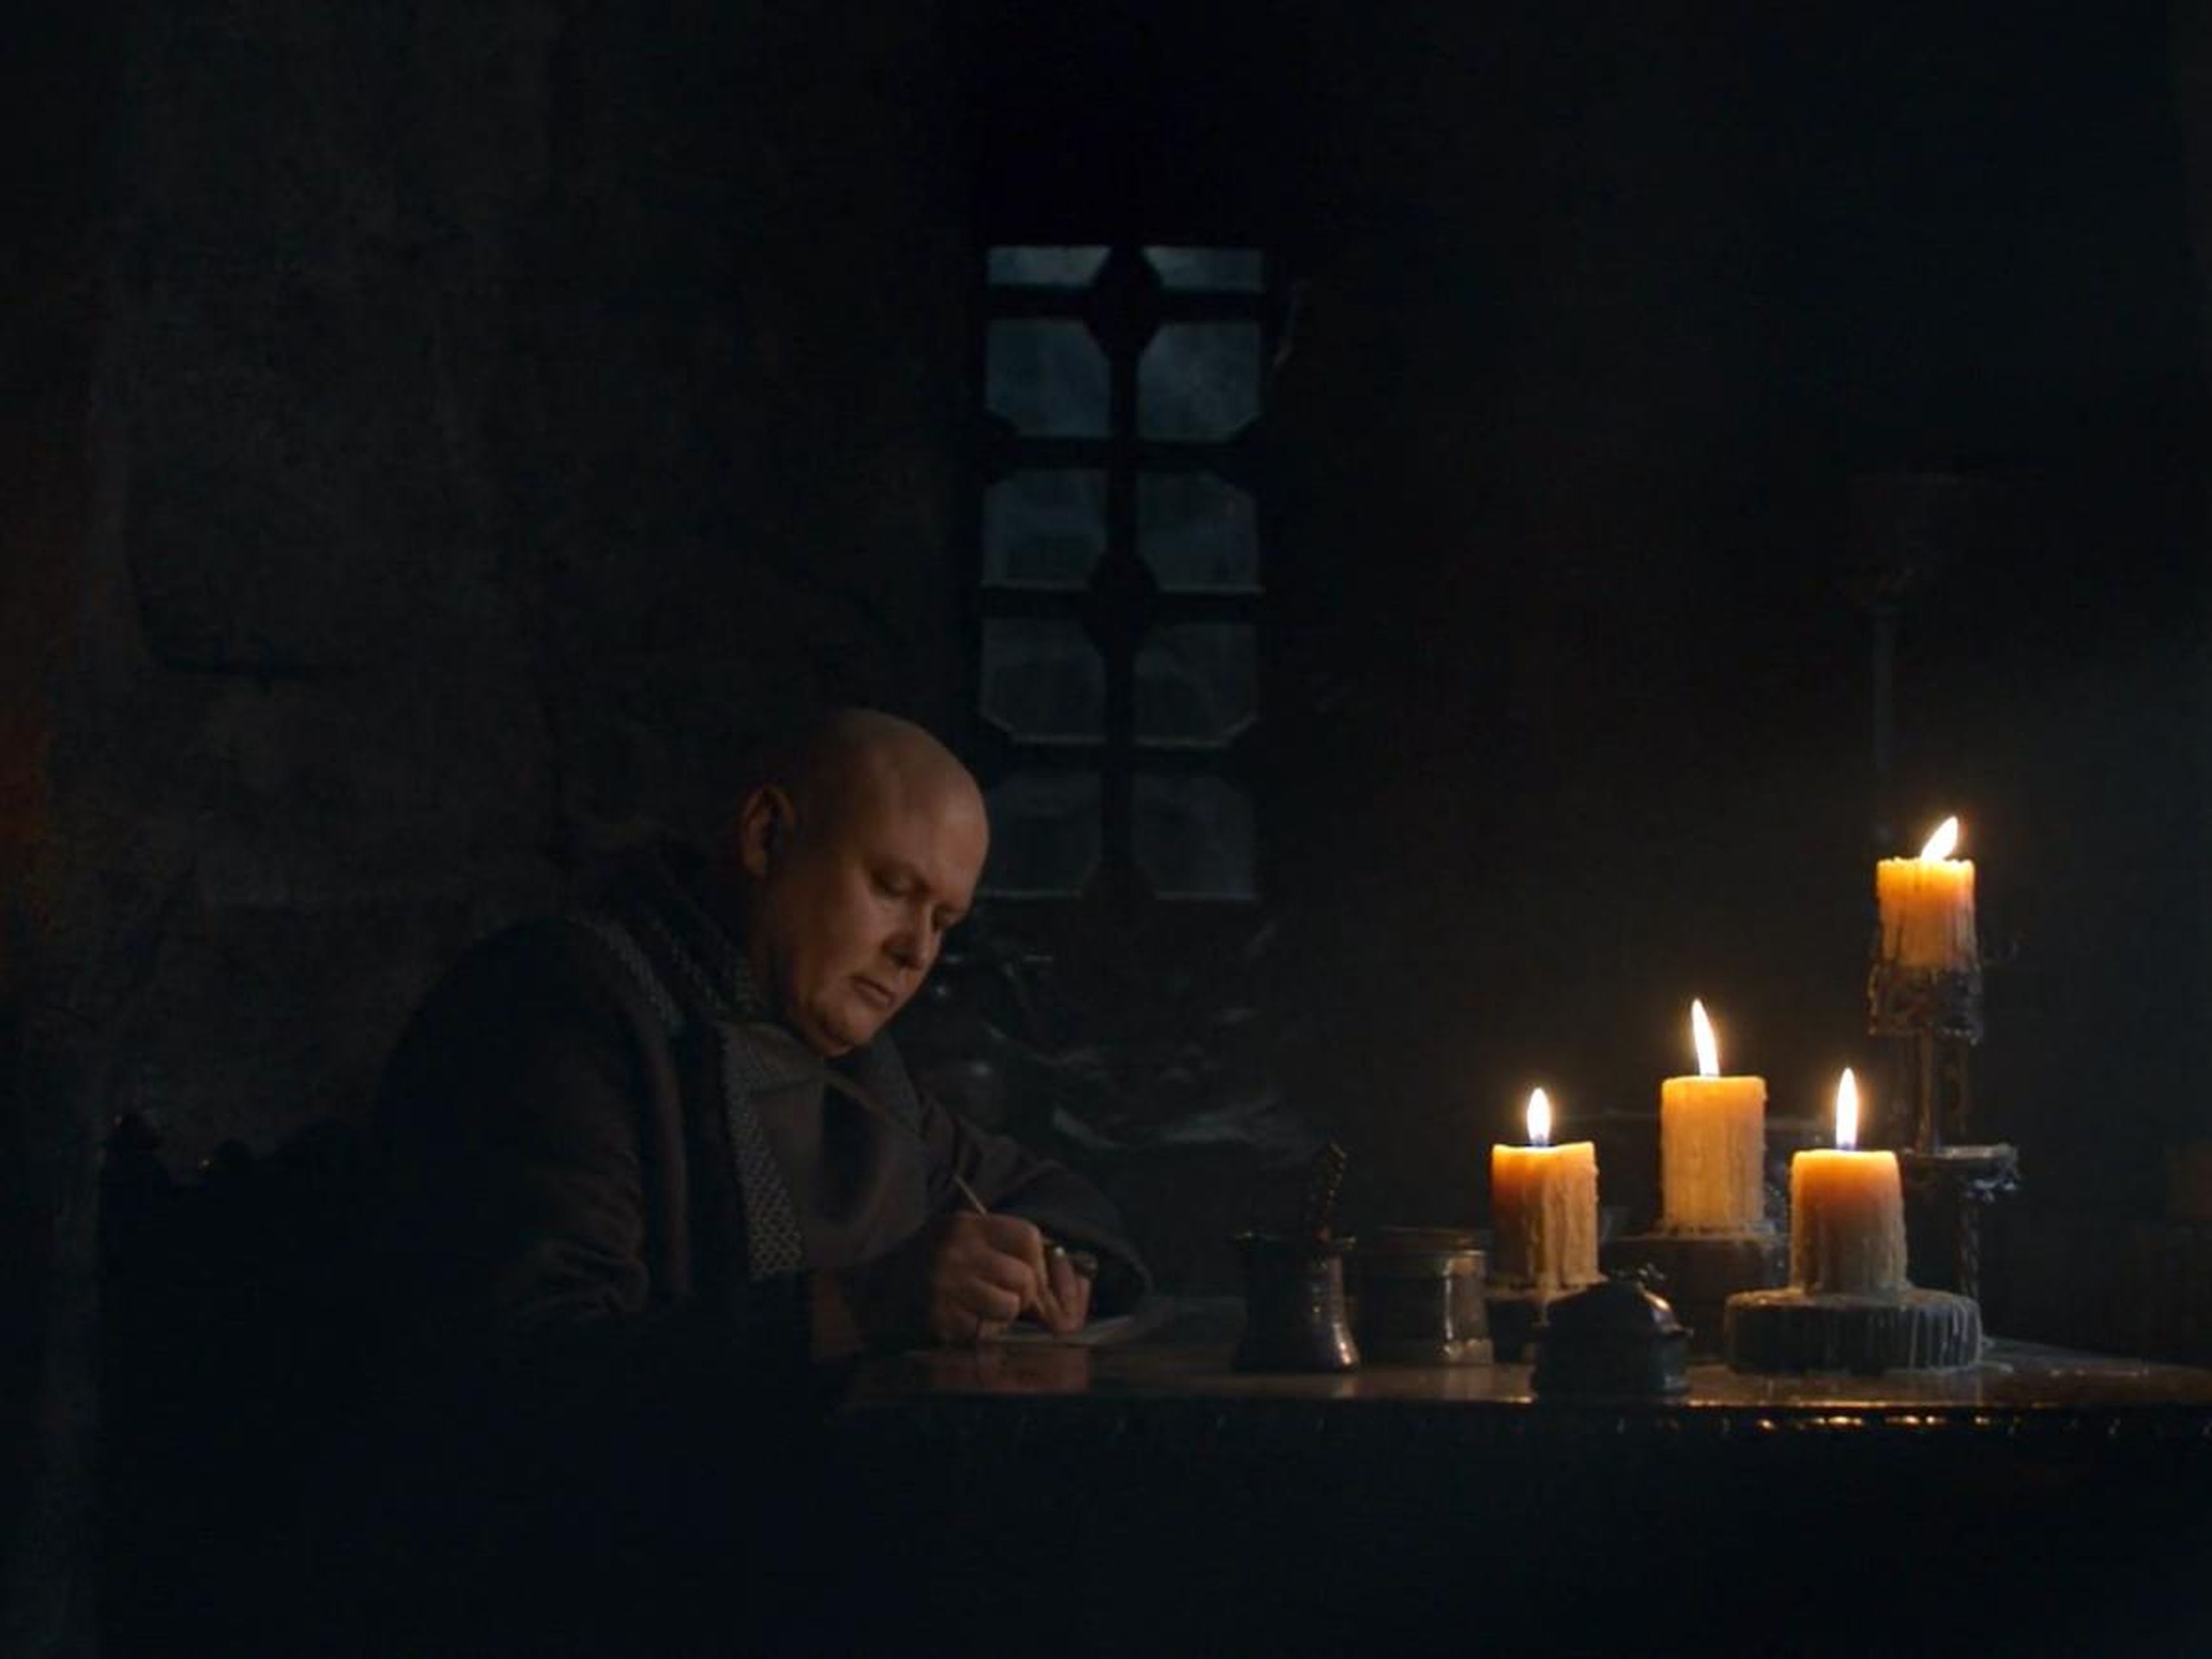 Varys,interpretado por Conleth Hill, escribiendo una carta.